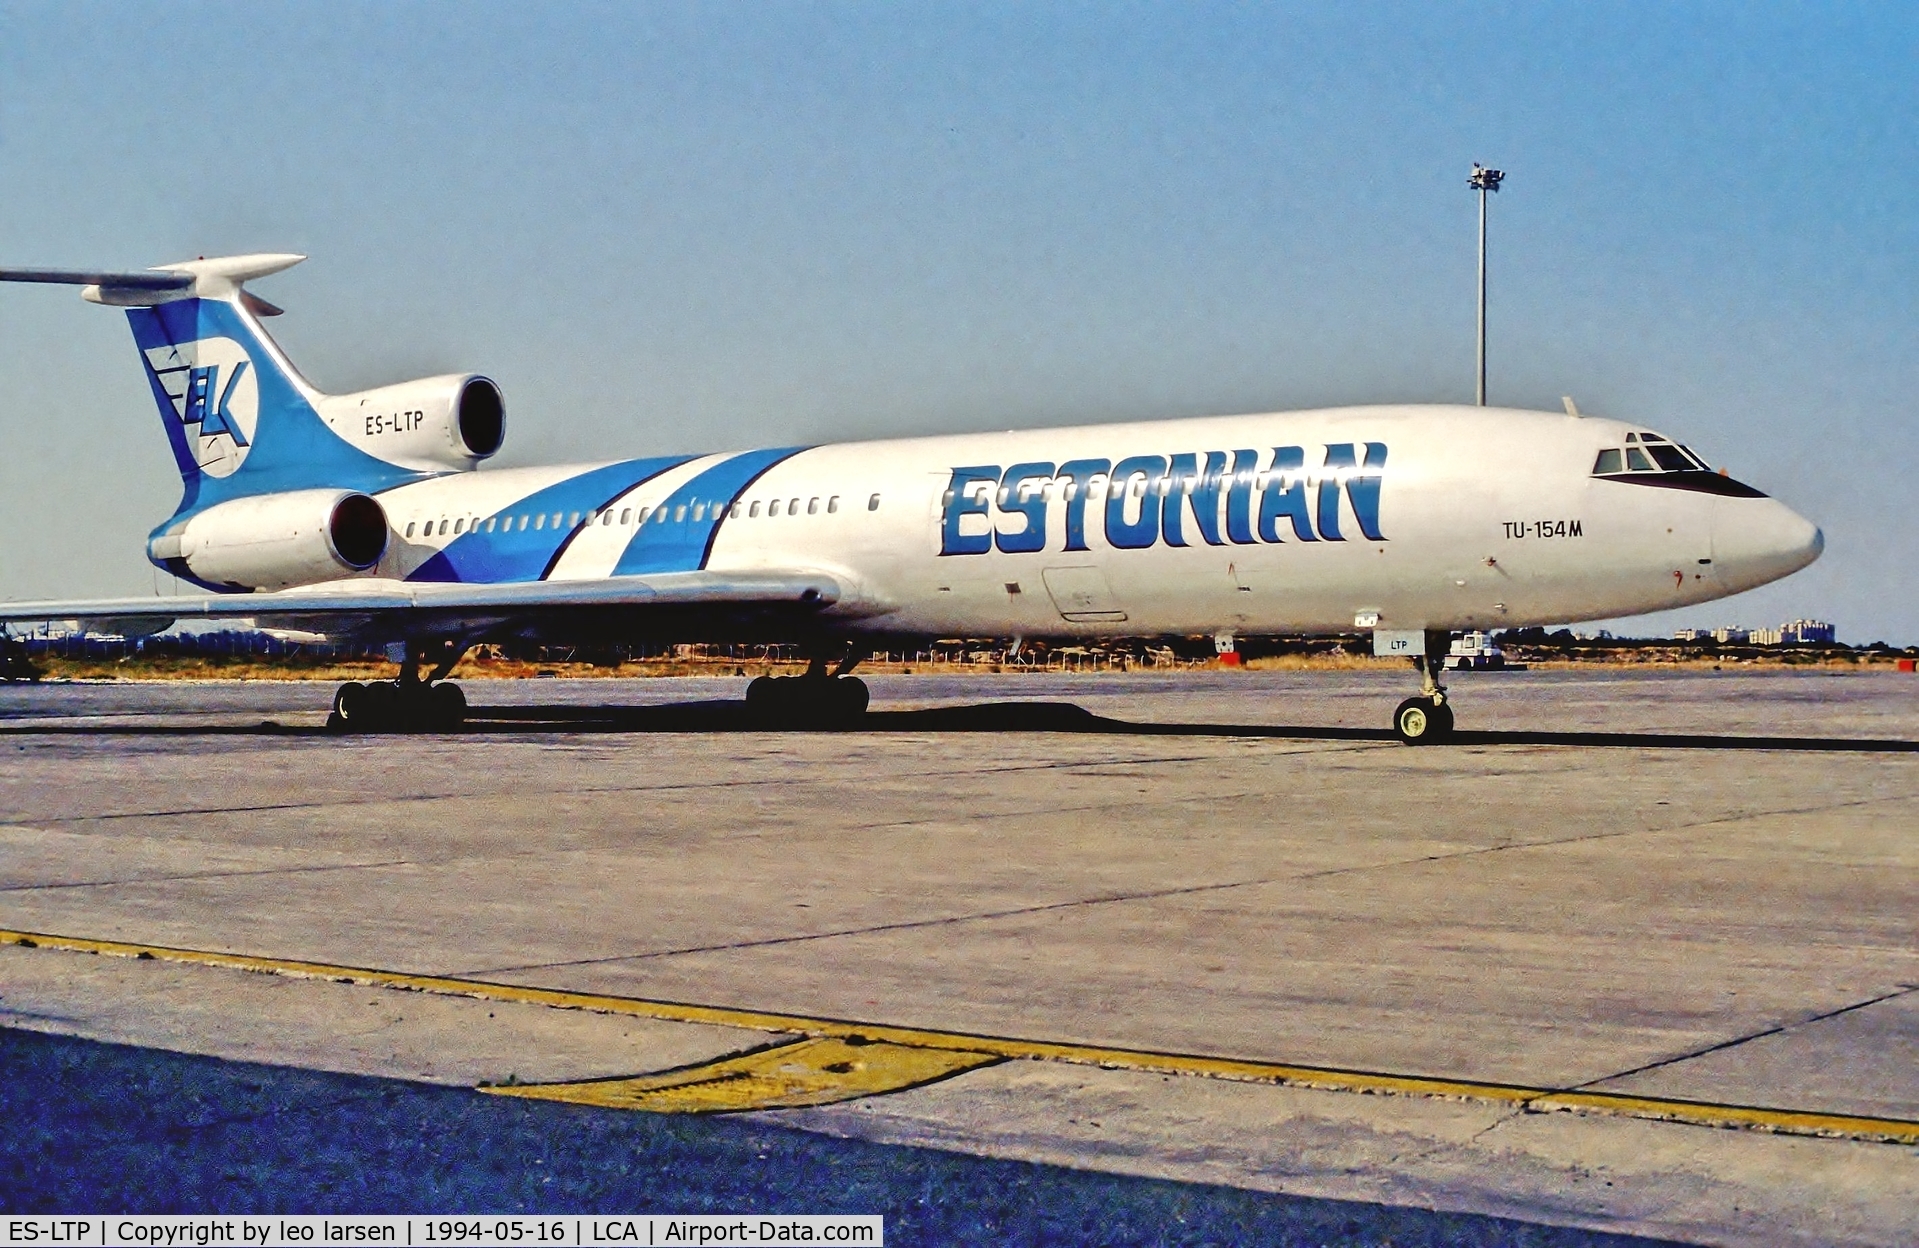 ES-LTP, 1992 Tupolev Tu-154M C/N 92A909, Larnaca Cyprus 16.5.94